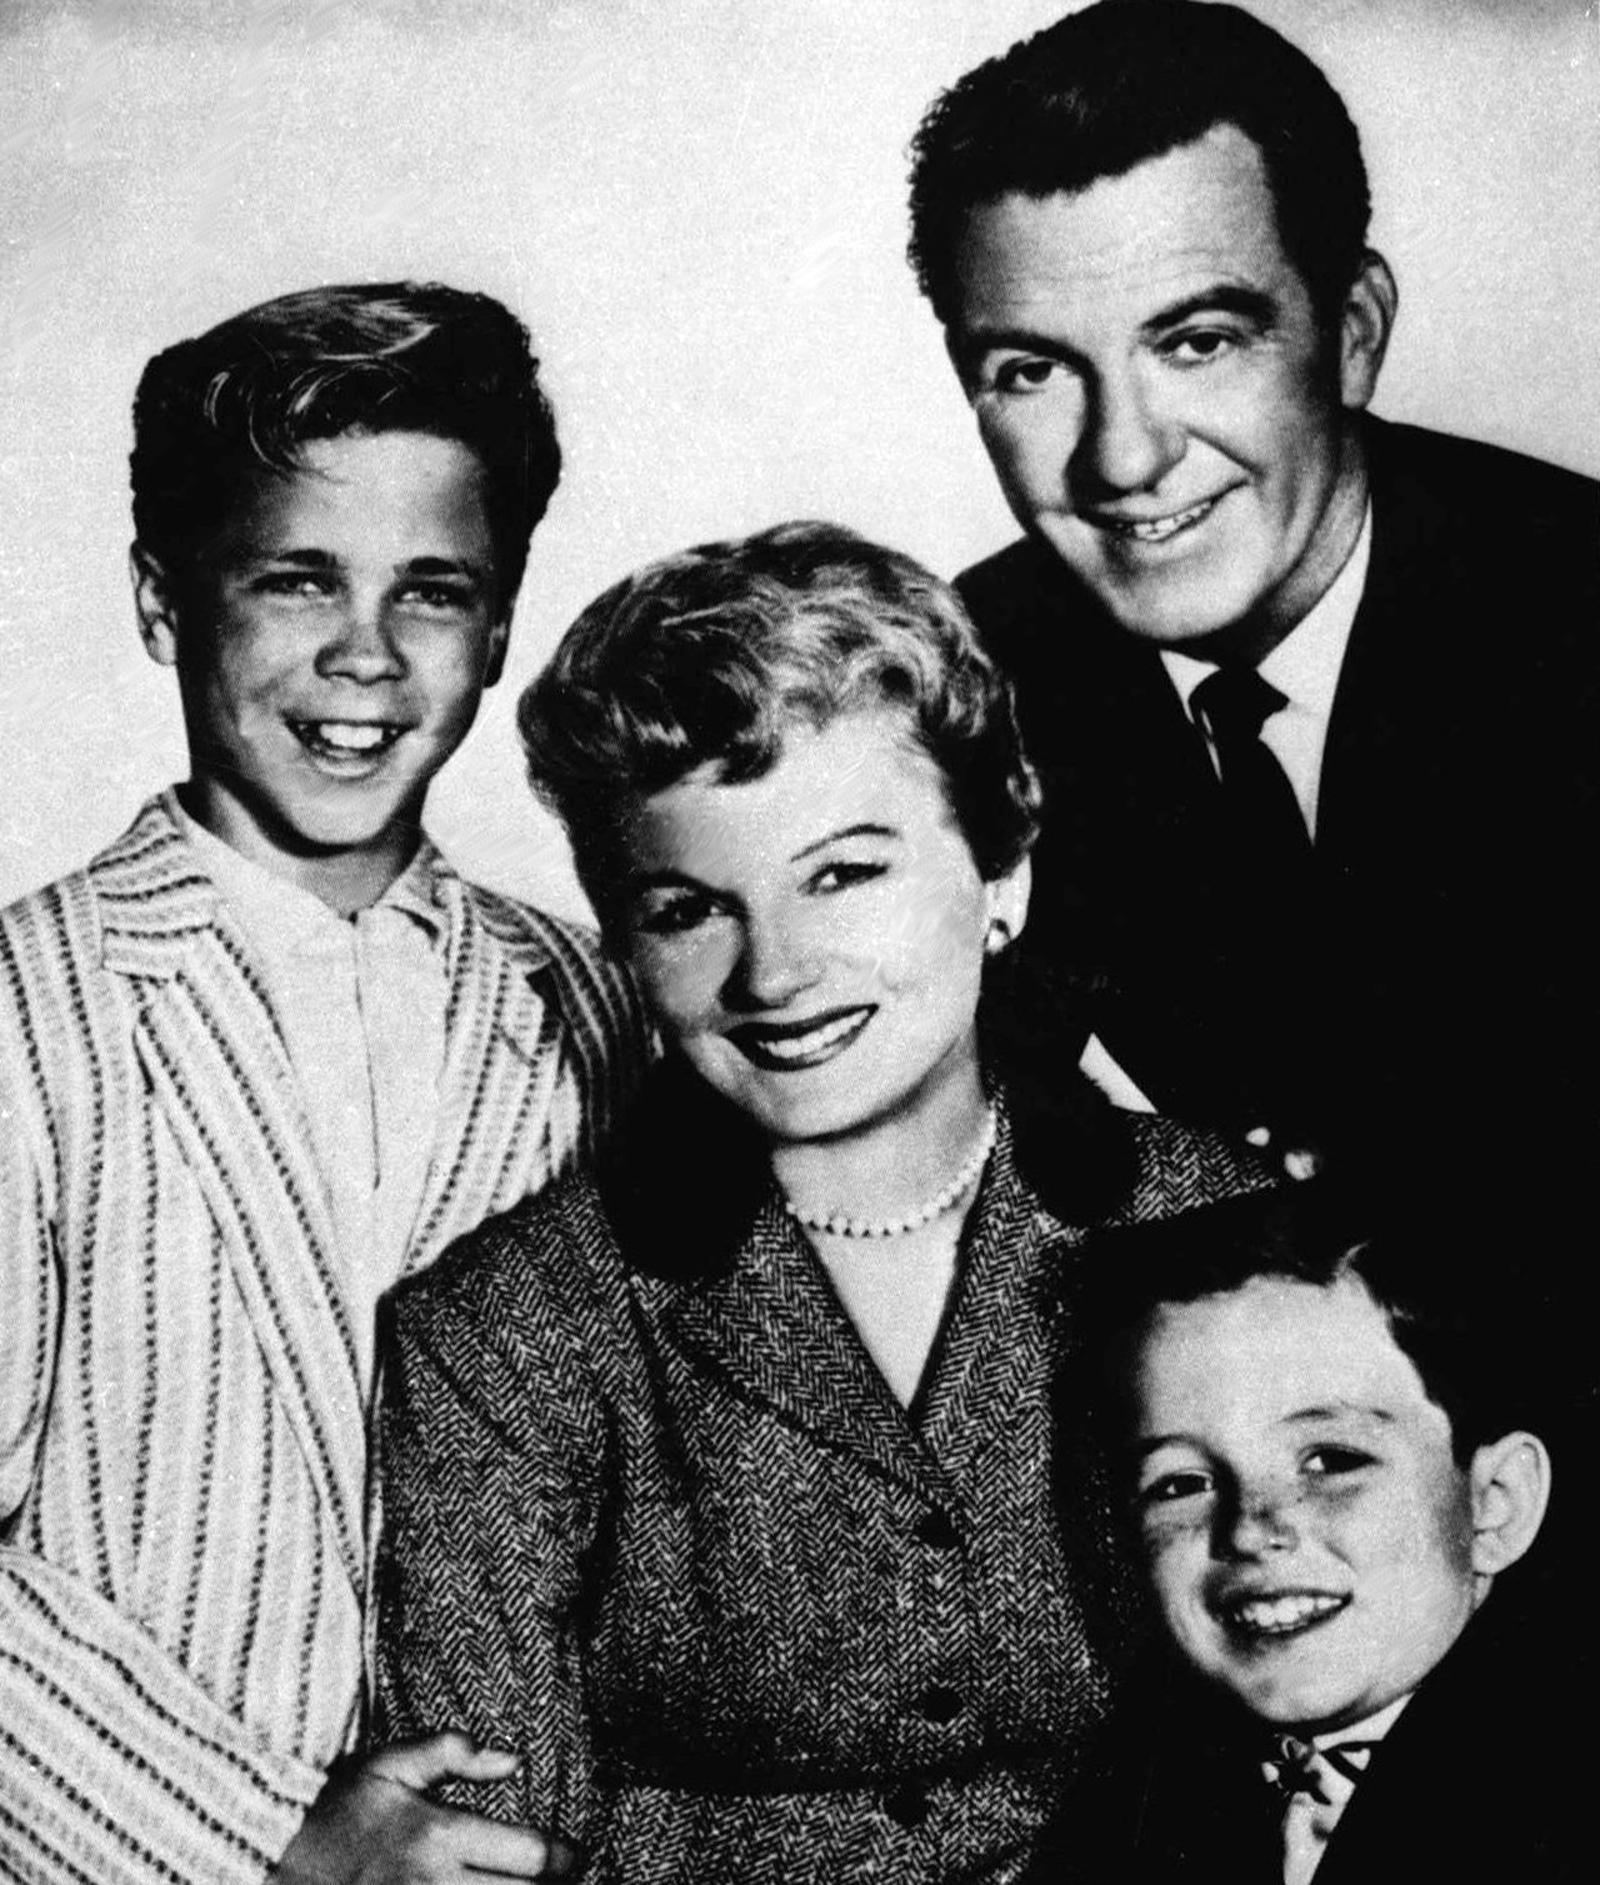 Tony Dow (längst till vänster) spelade Wally i tv-serien "Leave it to beaver", som gick i amerikansk tv mellan 1957 och 1963.